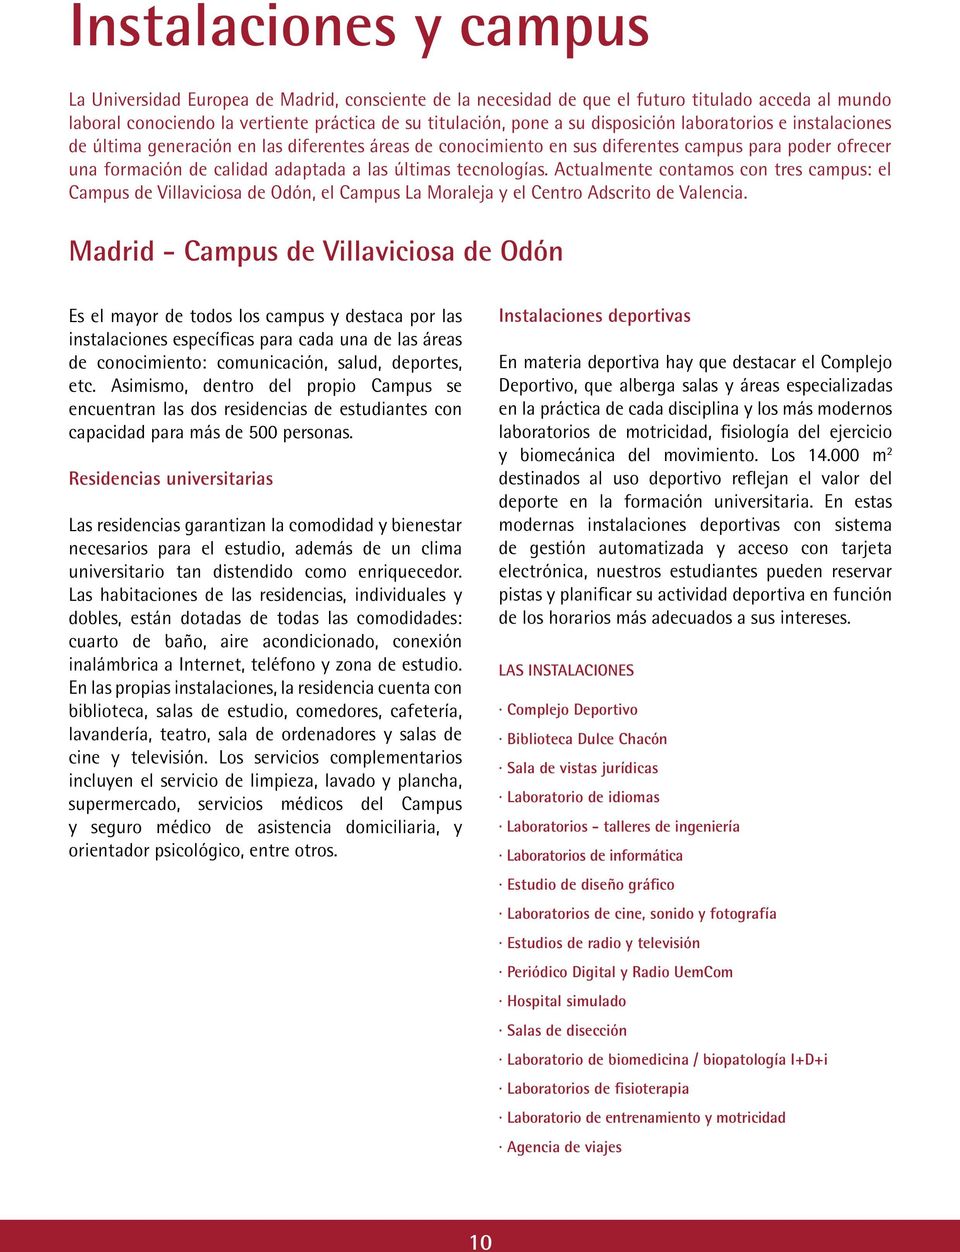 tecnologías. Actualmente contamos con tres campus: el Campus de Villaviciosa de Odón, el Campus La Moraleja y el Centro Adscrito de Valencia.